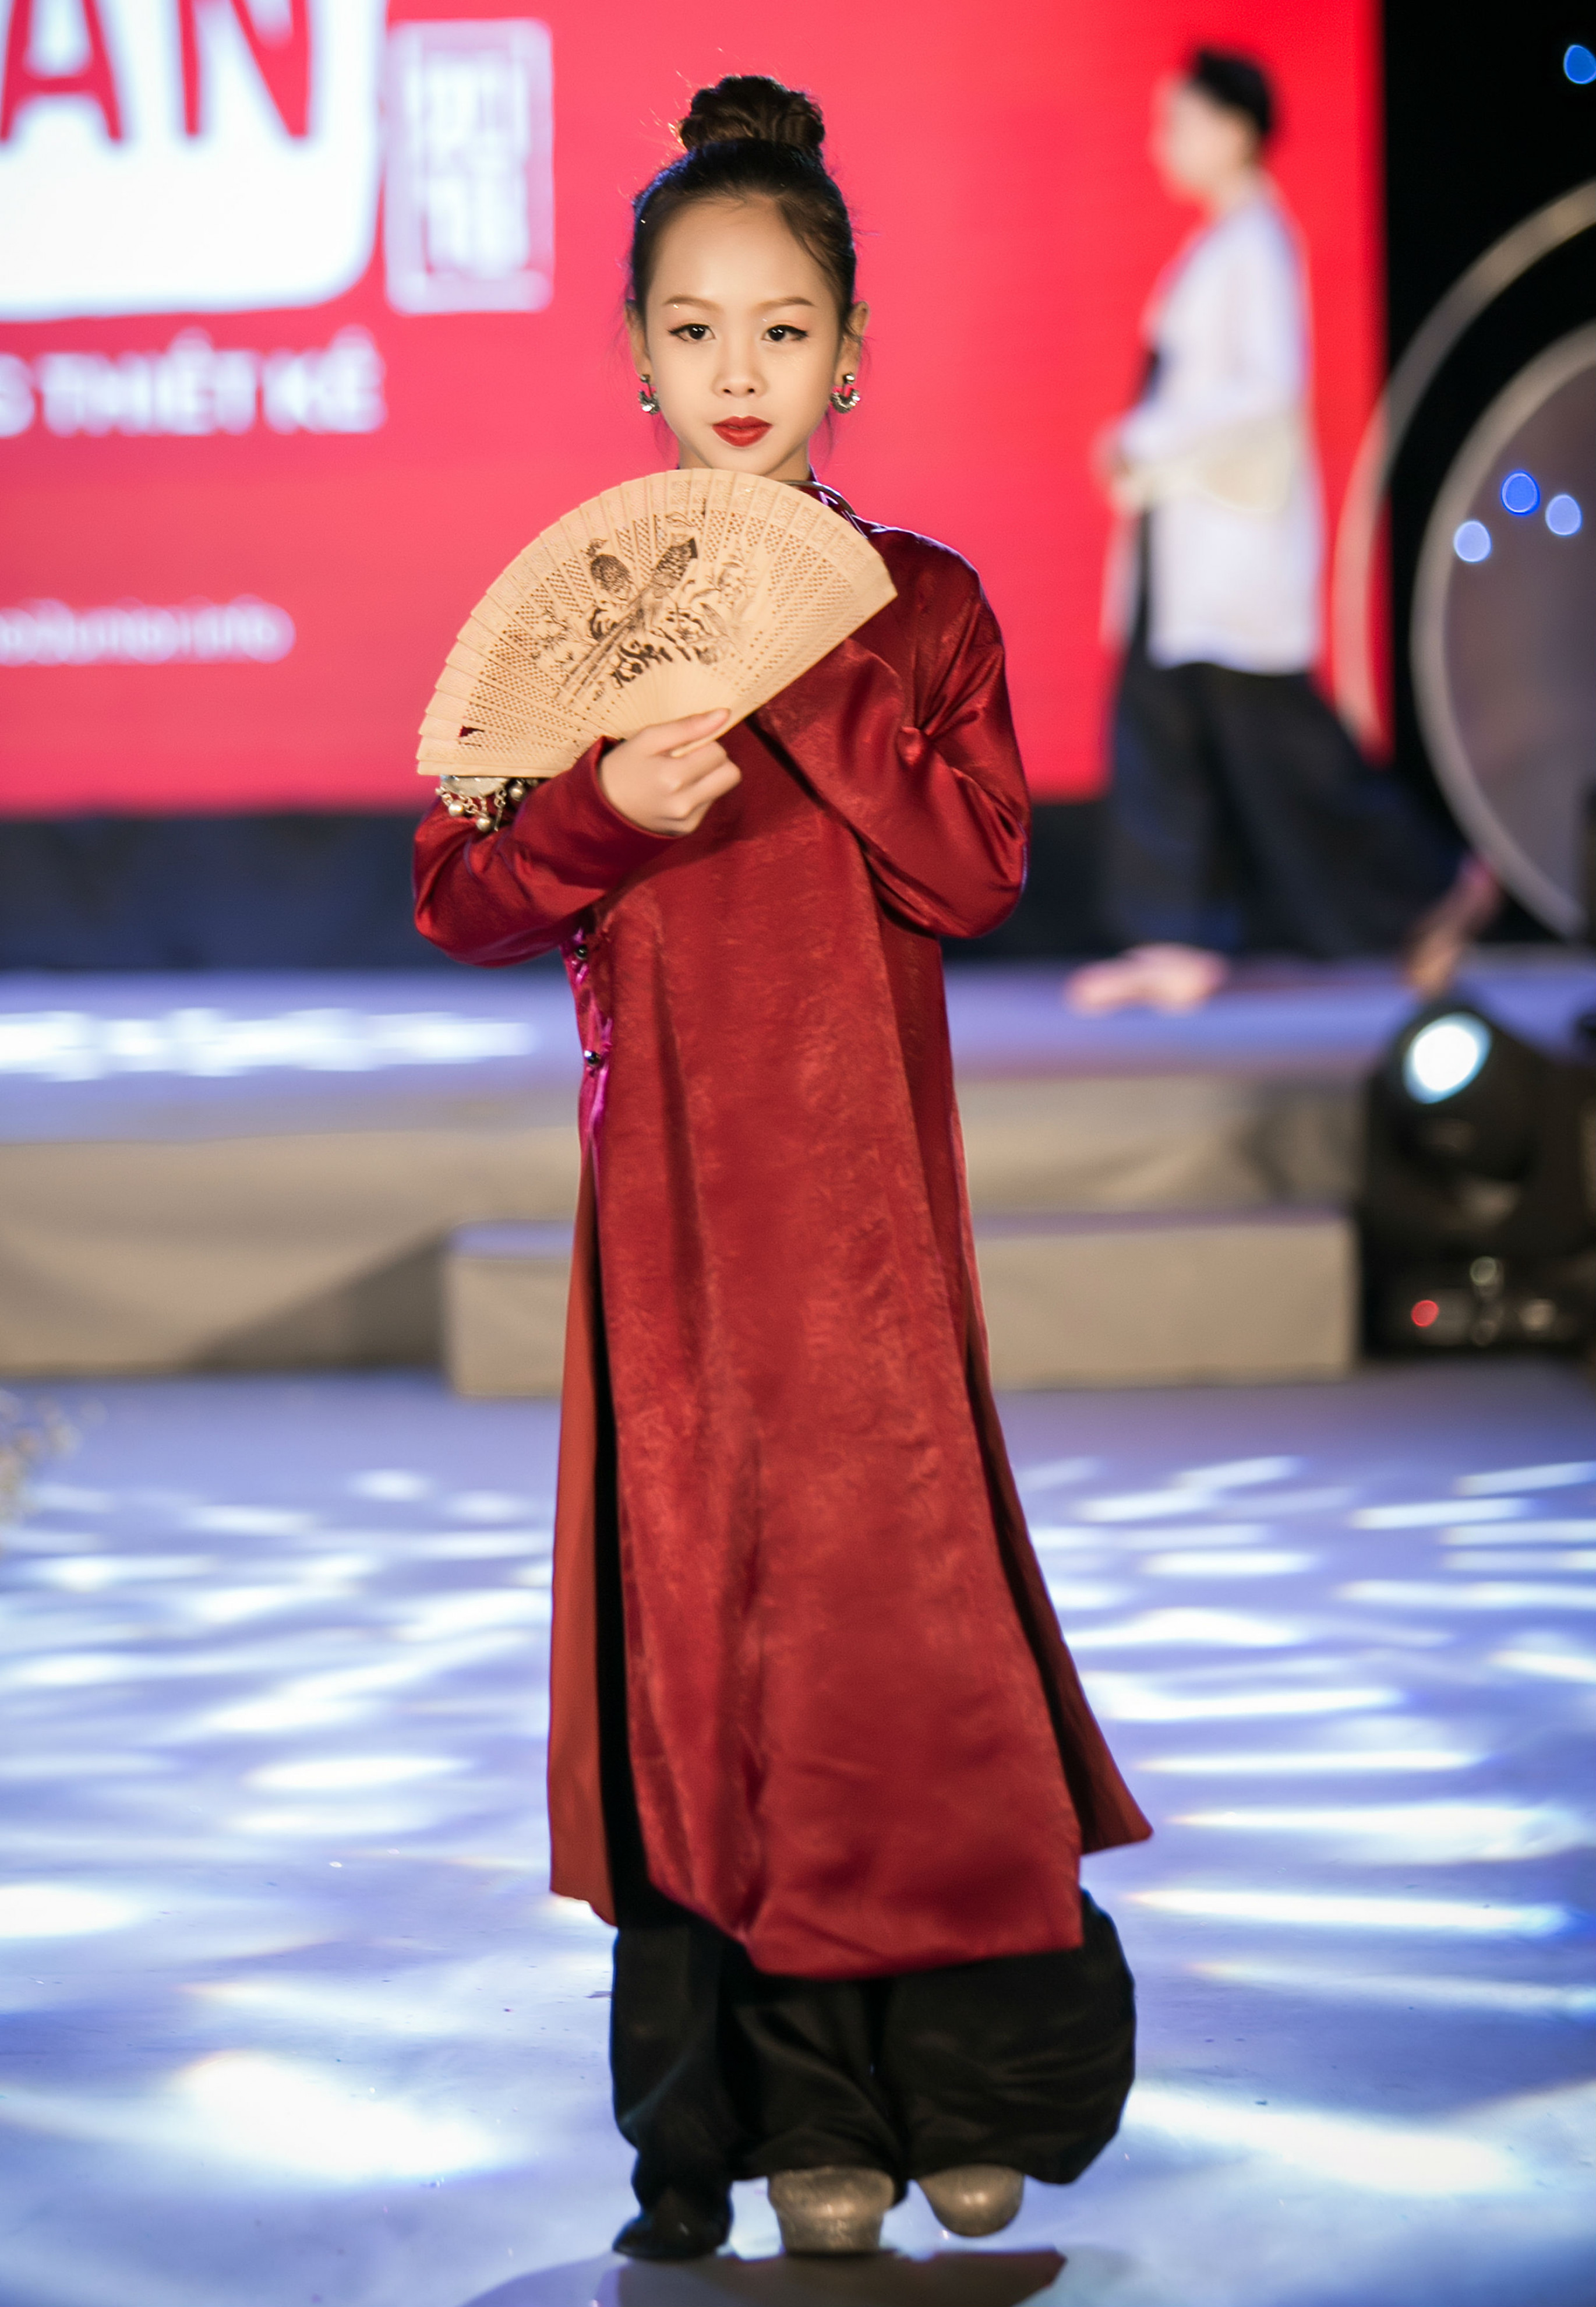 NTK Vân Trần vừa trình làng bộ sưu tập thời trang truyền thống mang tên “Quên lãng”, gồm 20 bộ mẫu đa dạng kiểu cách.